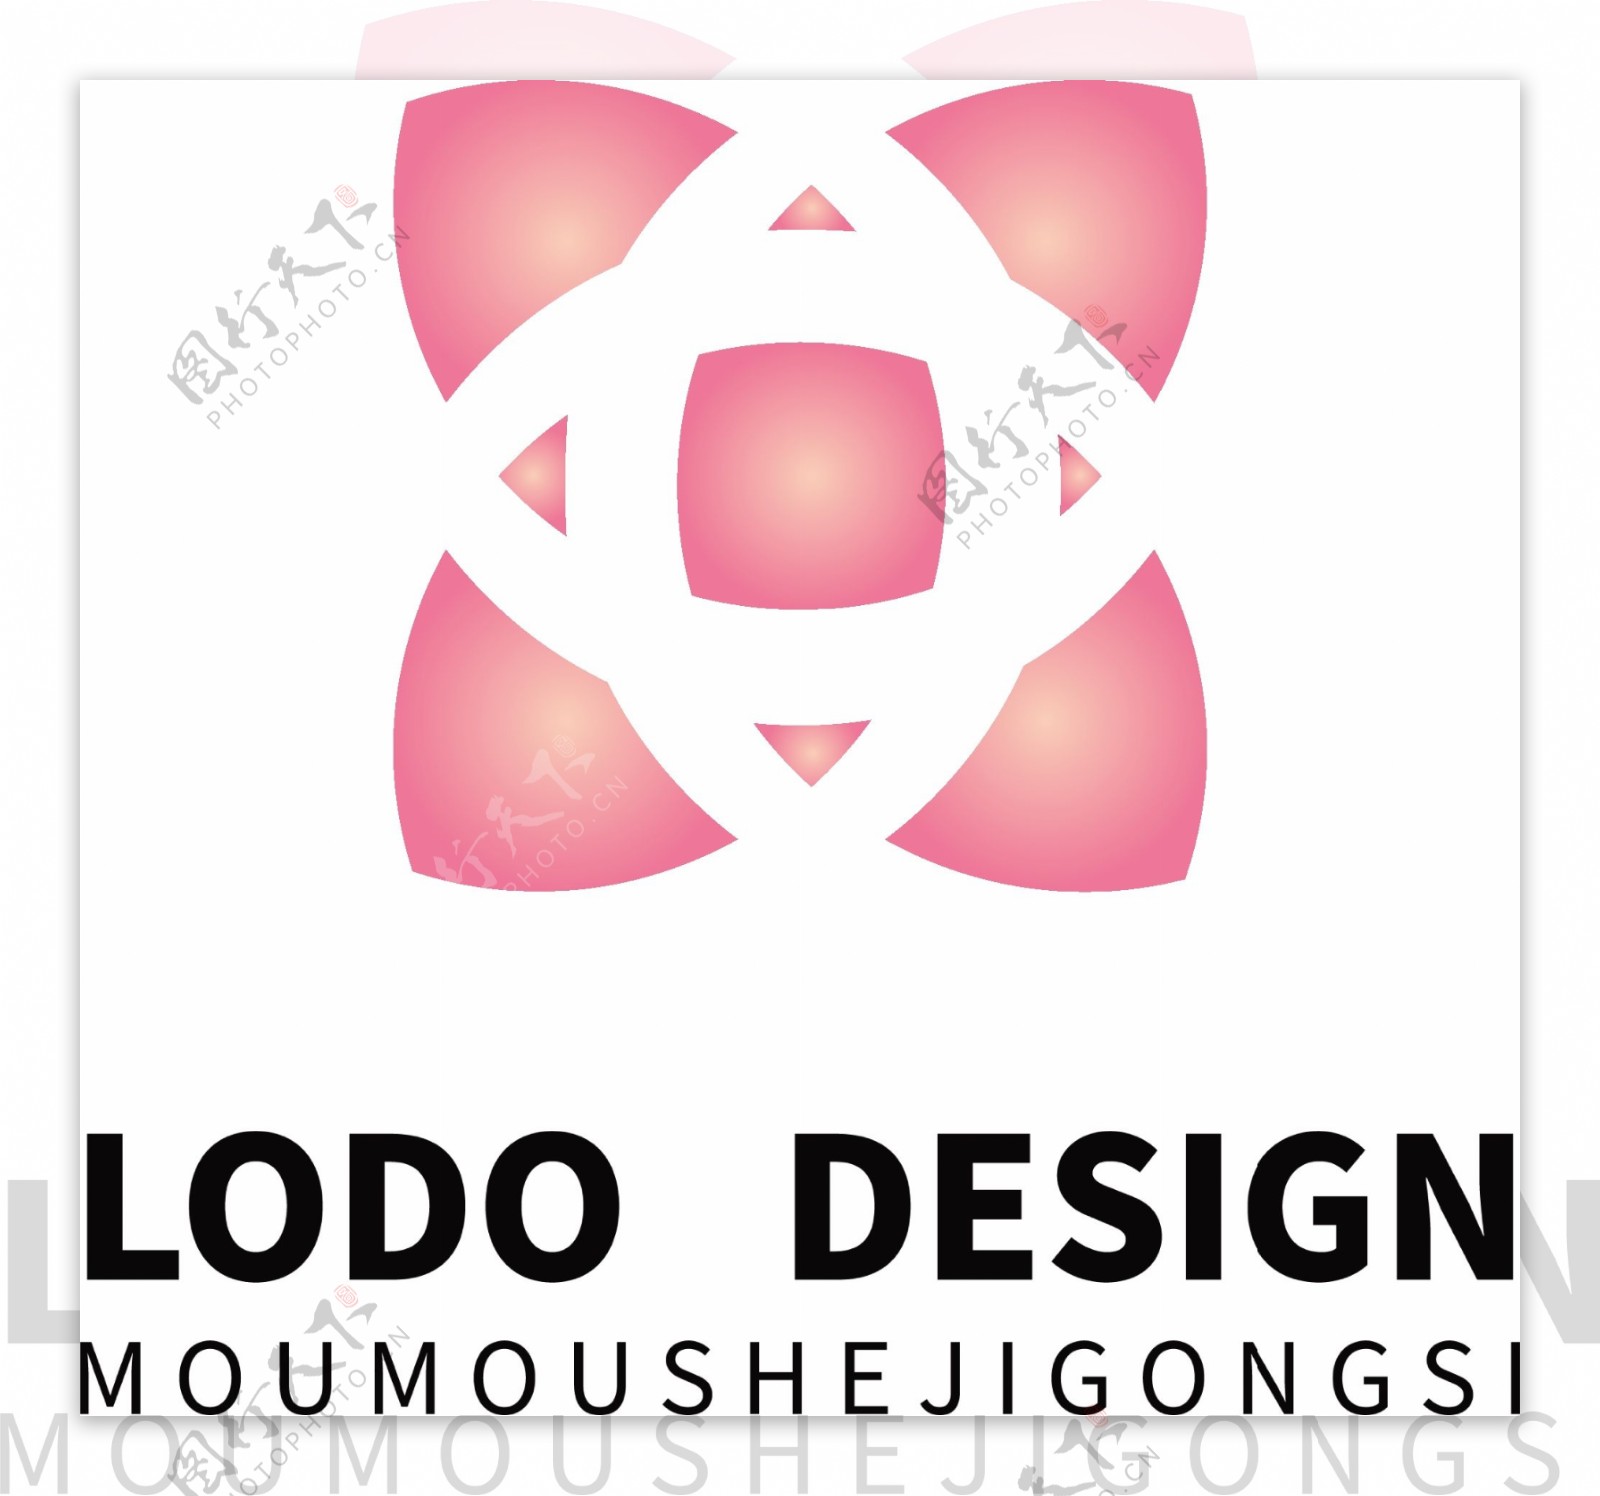 原创粉色女性卡哇伊生活用品logo设计